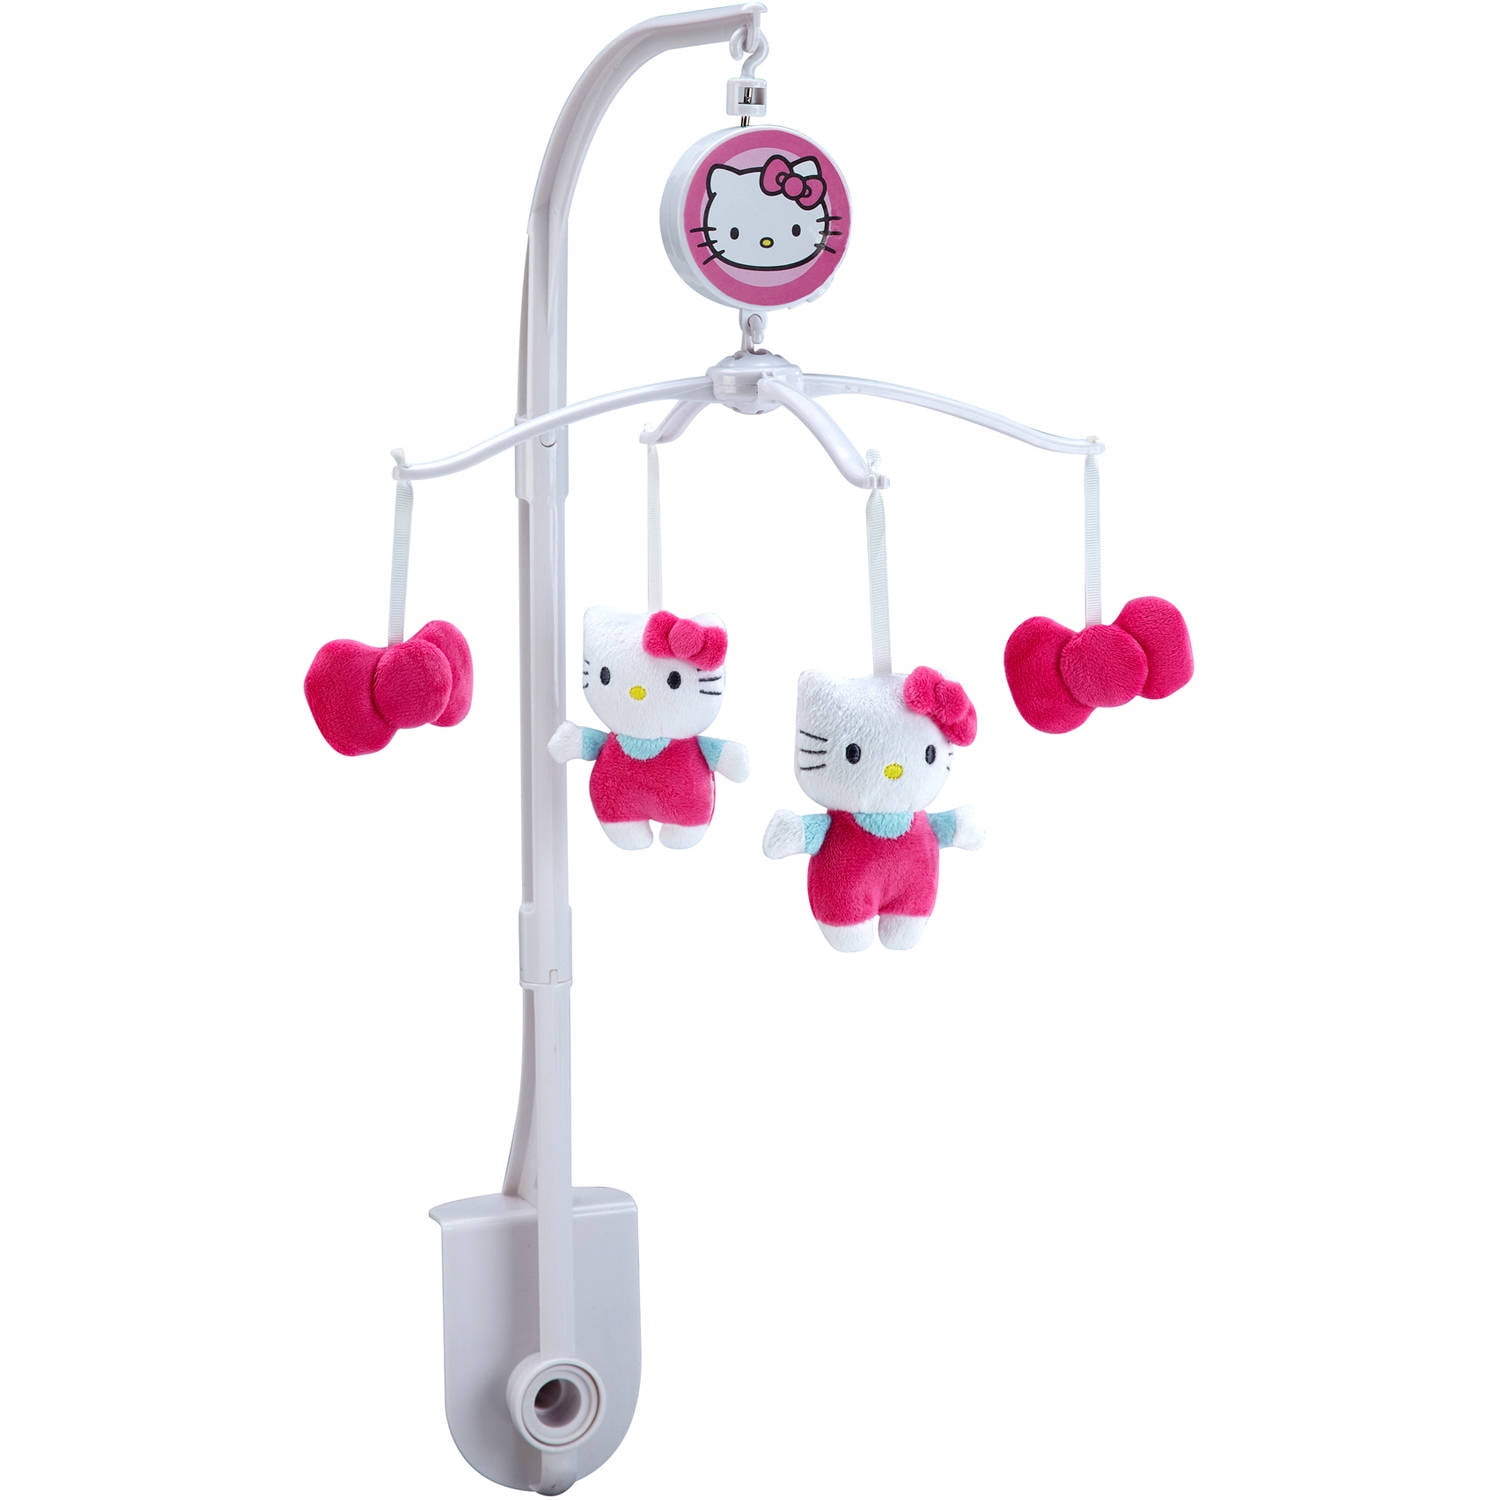 Hello Kitty Musical Mobile - Walmart 